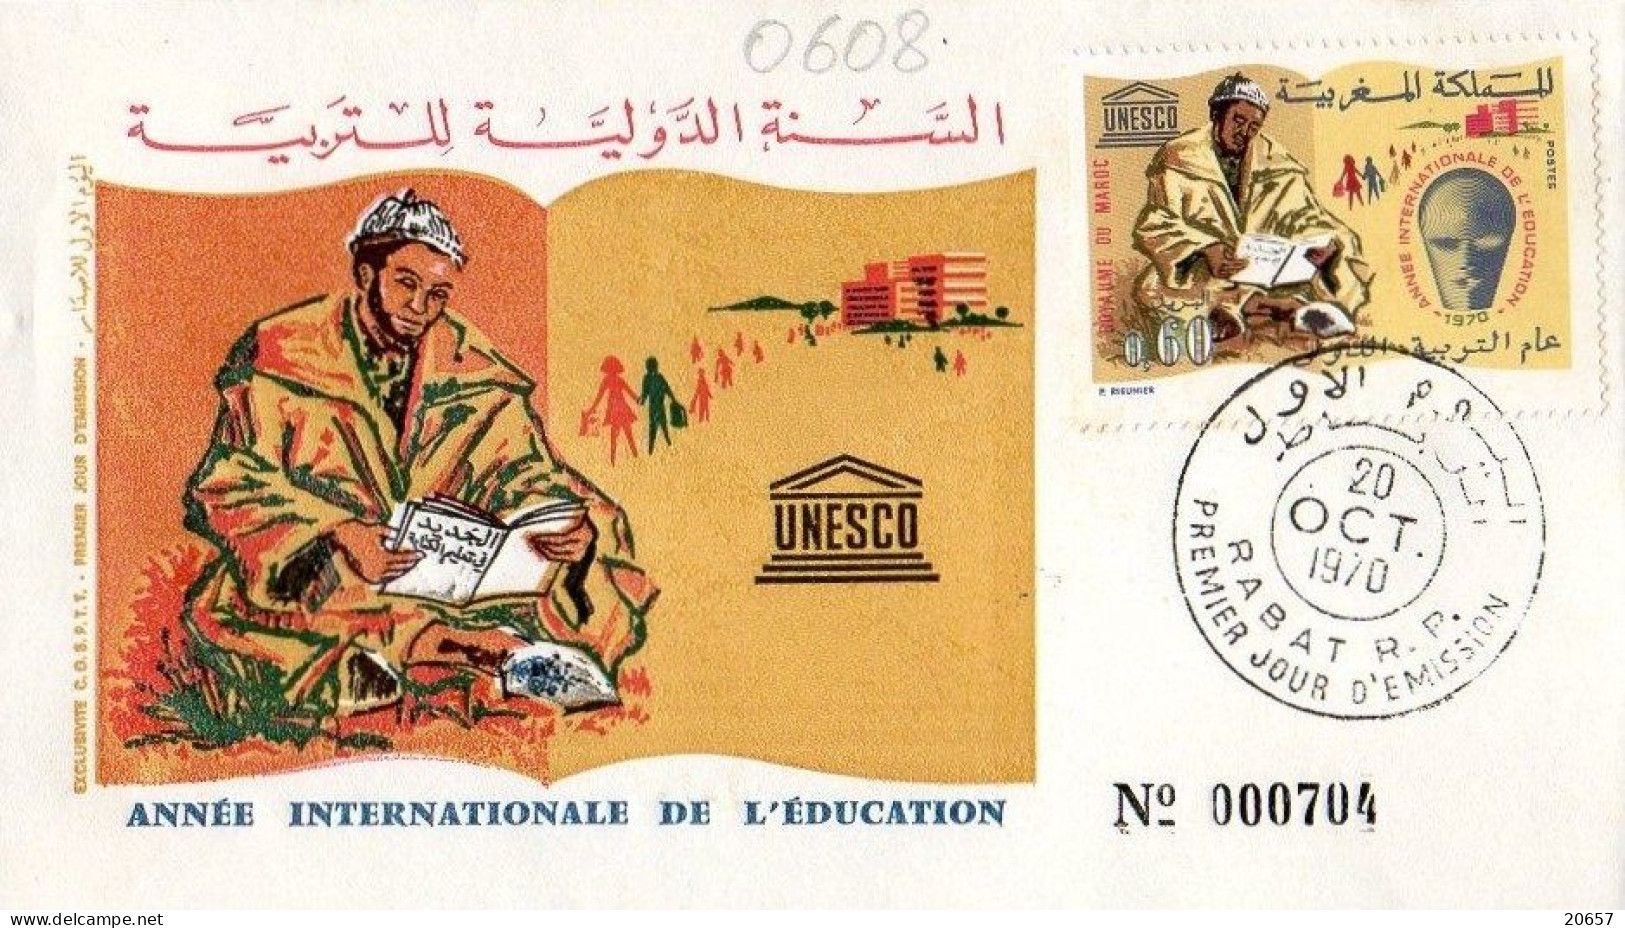 Maroc Al Maghrib 0608 Fdc Année Internationale De L'Education, Livre - UNESCO